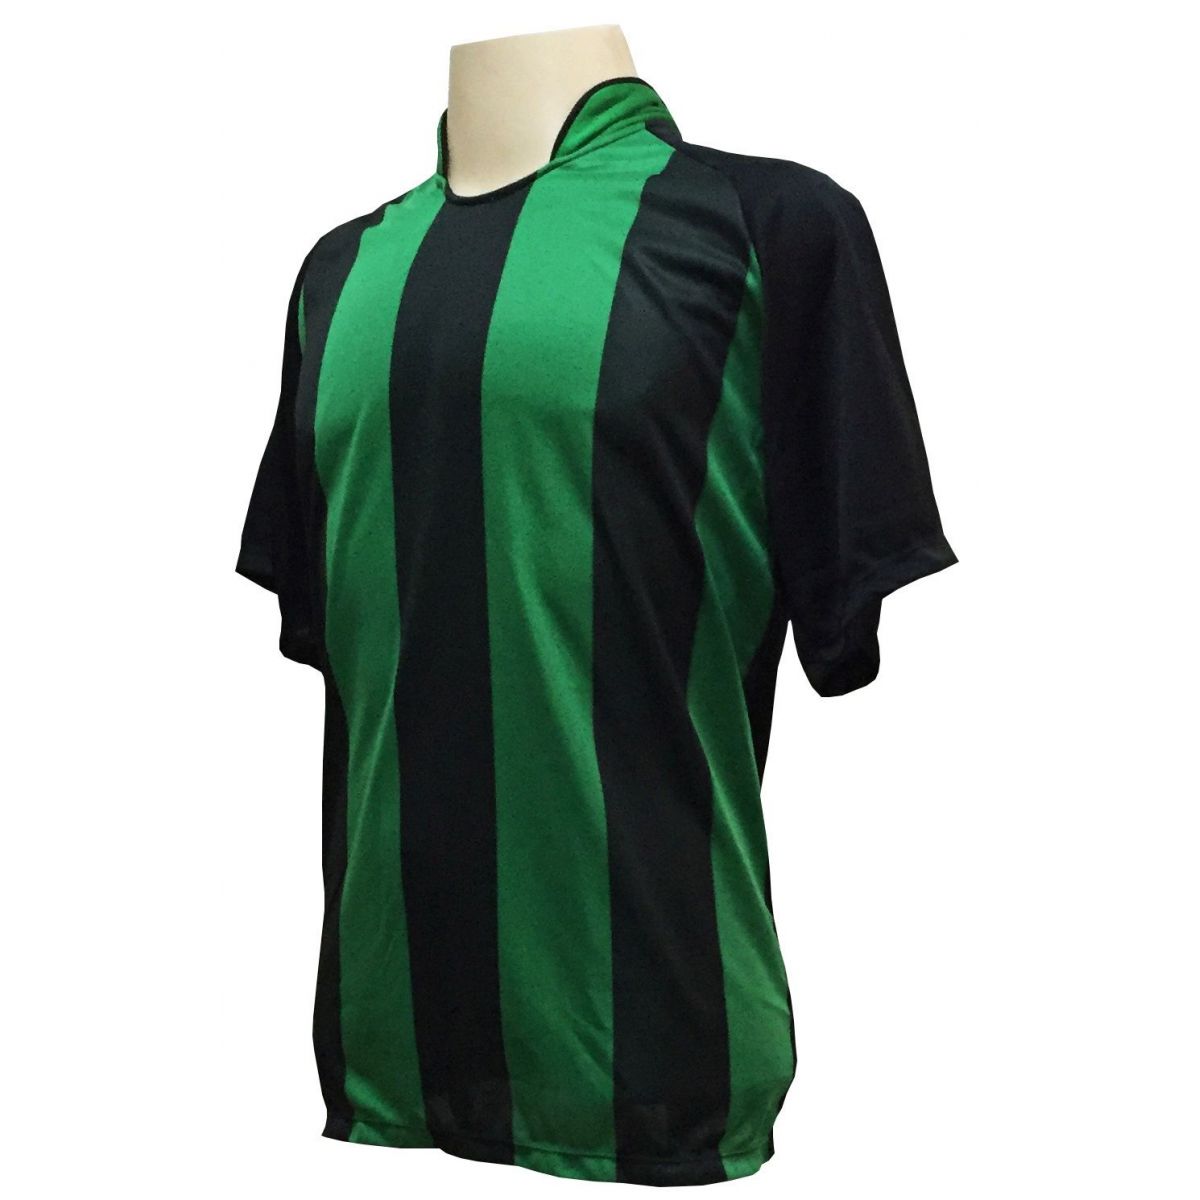 Uniforme Esportivo com 20 camisas modelo Milan Preto/Verde + 20 calções modelo Madrid + 1 Goleiro + Brindes